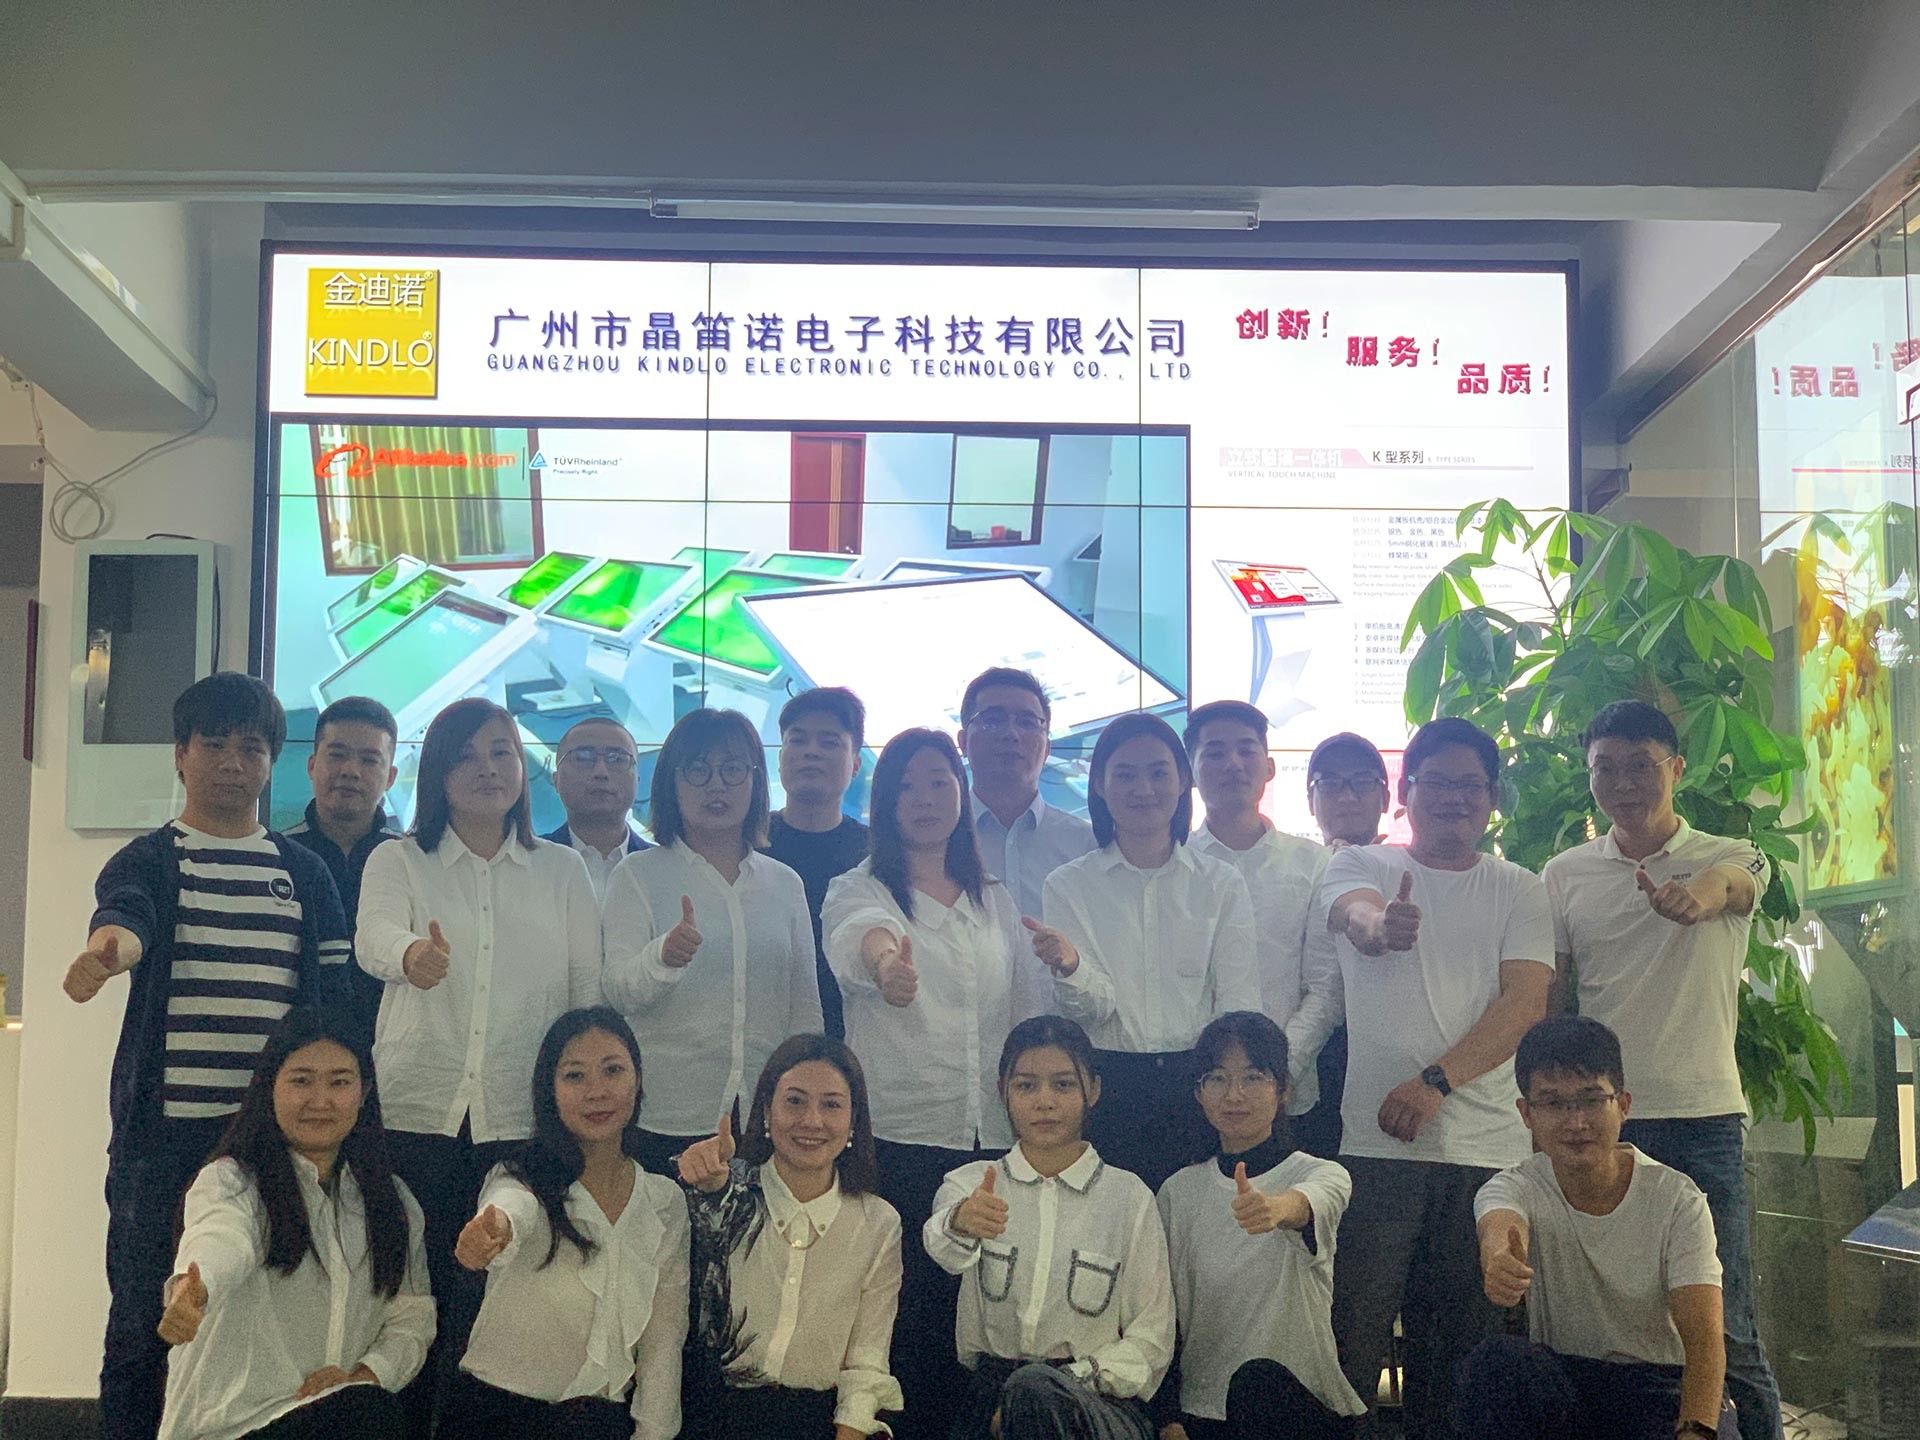 ประเทศจีน Guangzhou Jingdinuo Electronic Technology Co., Ltd. รายละเอียด บริษัท